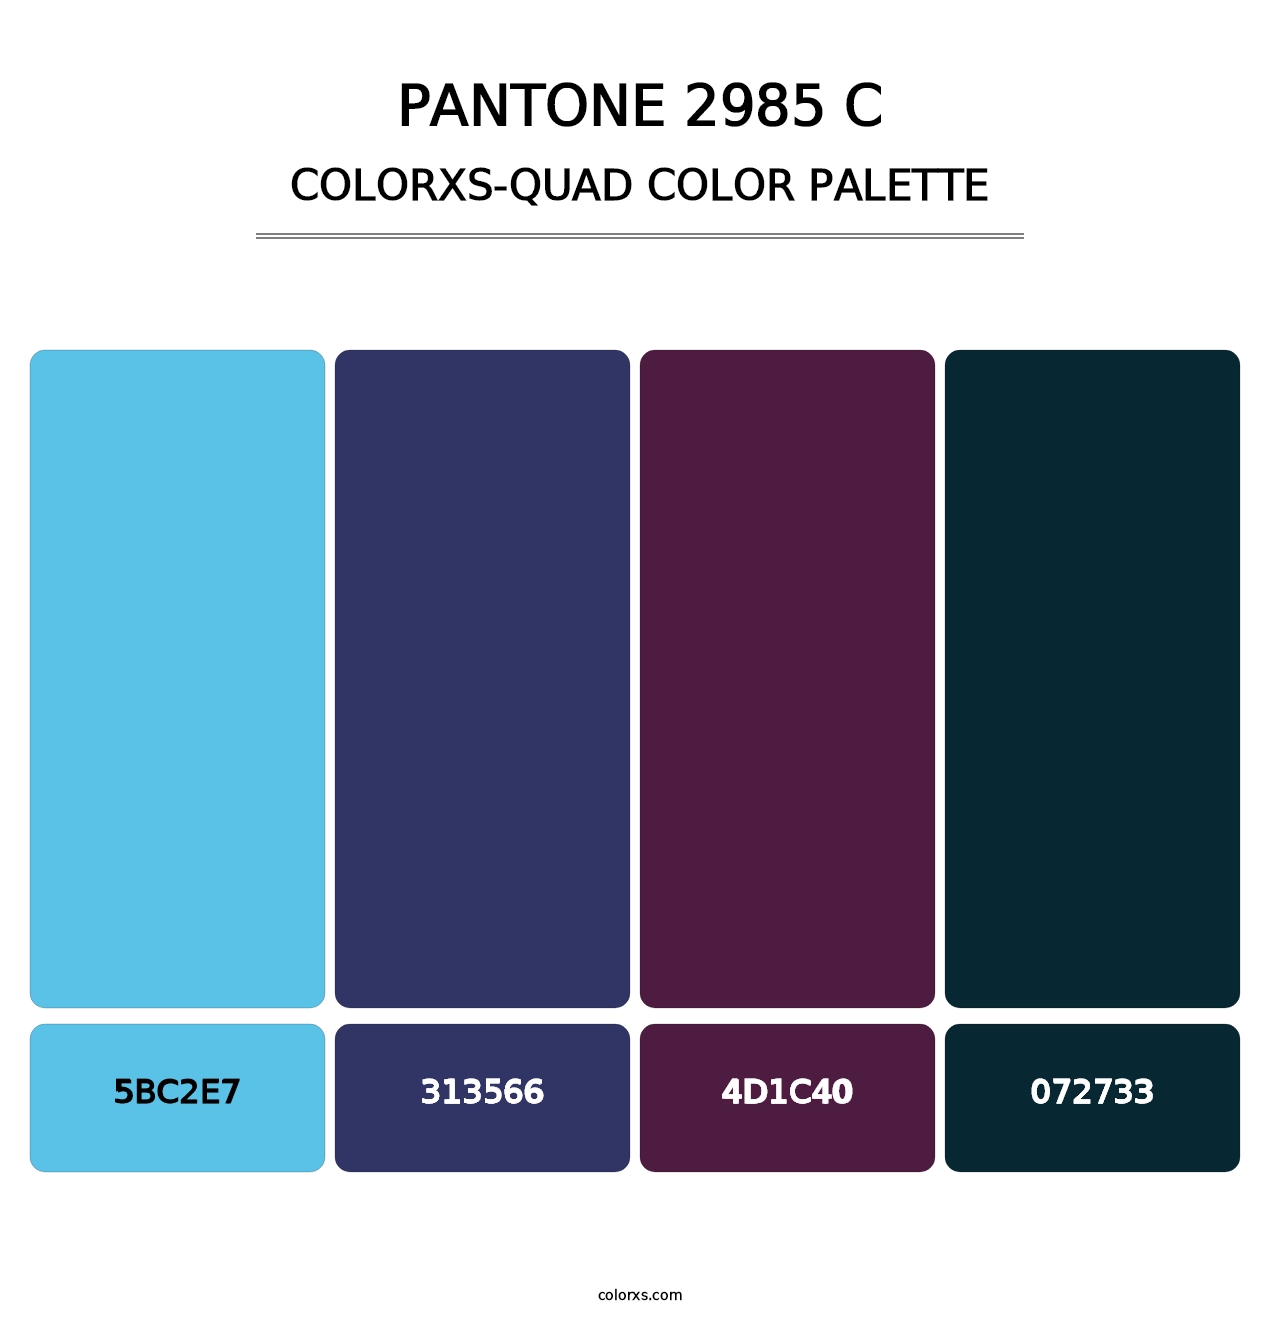 PANTONE 2985 C - Colorxs Quad Palette